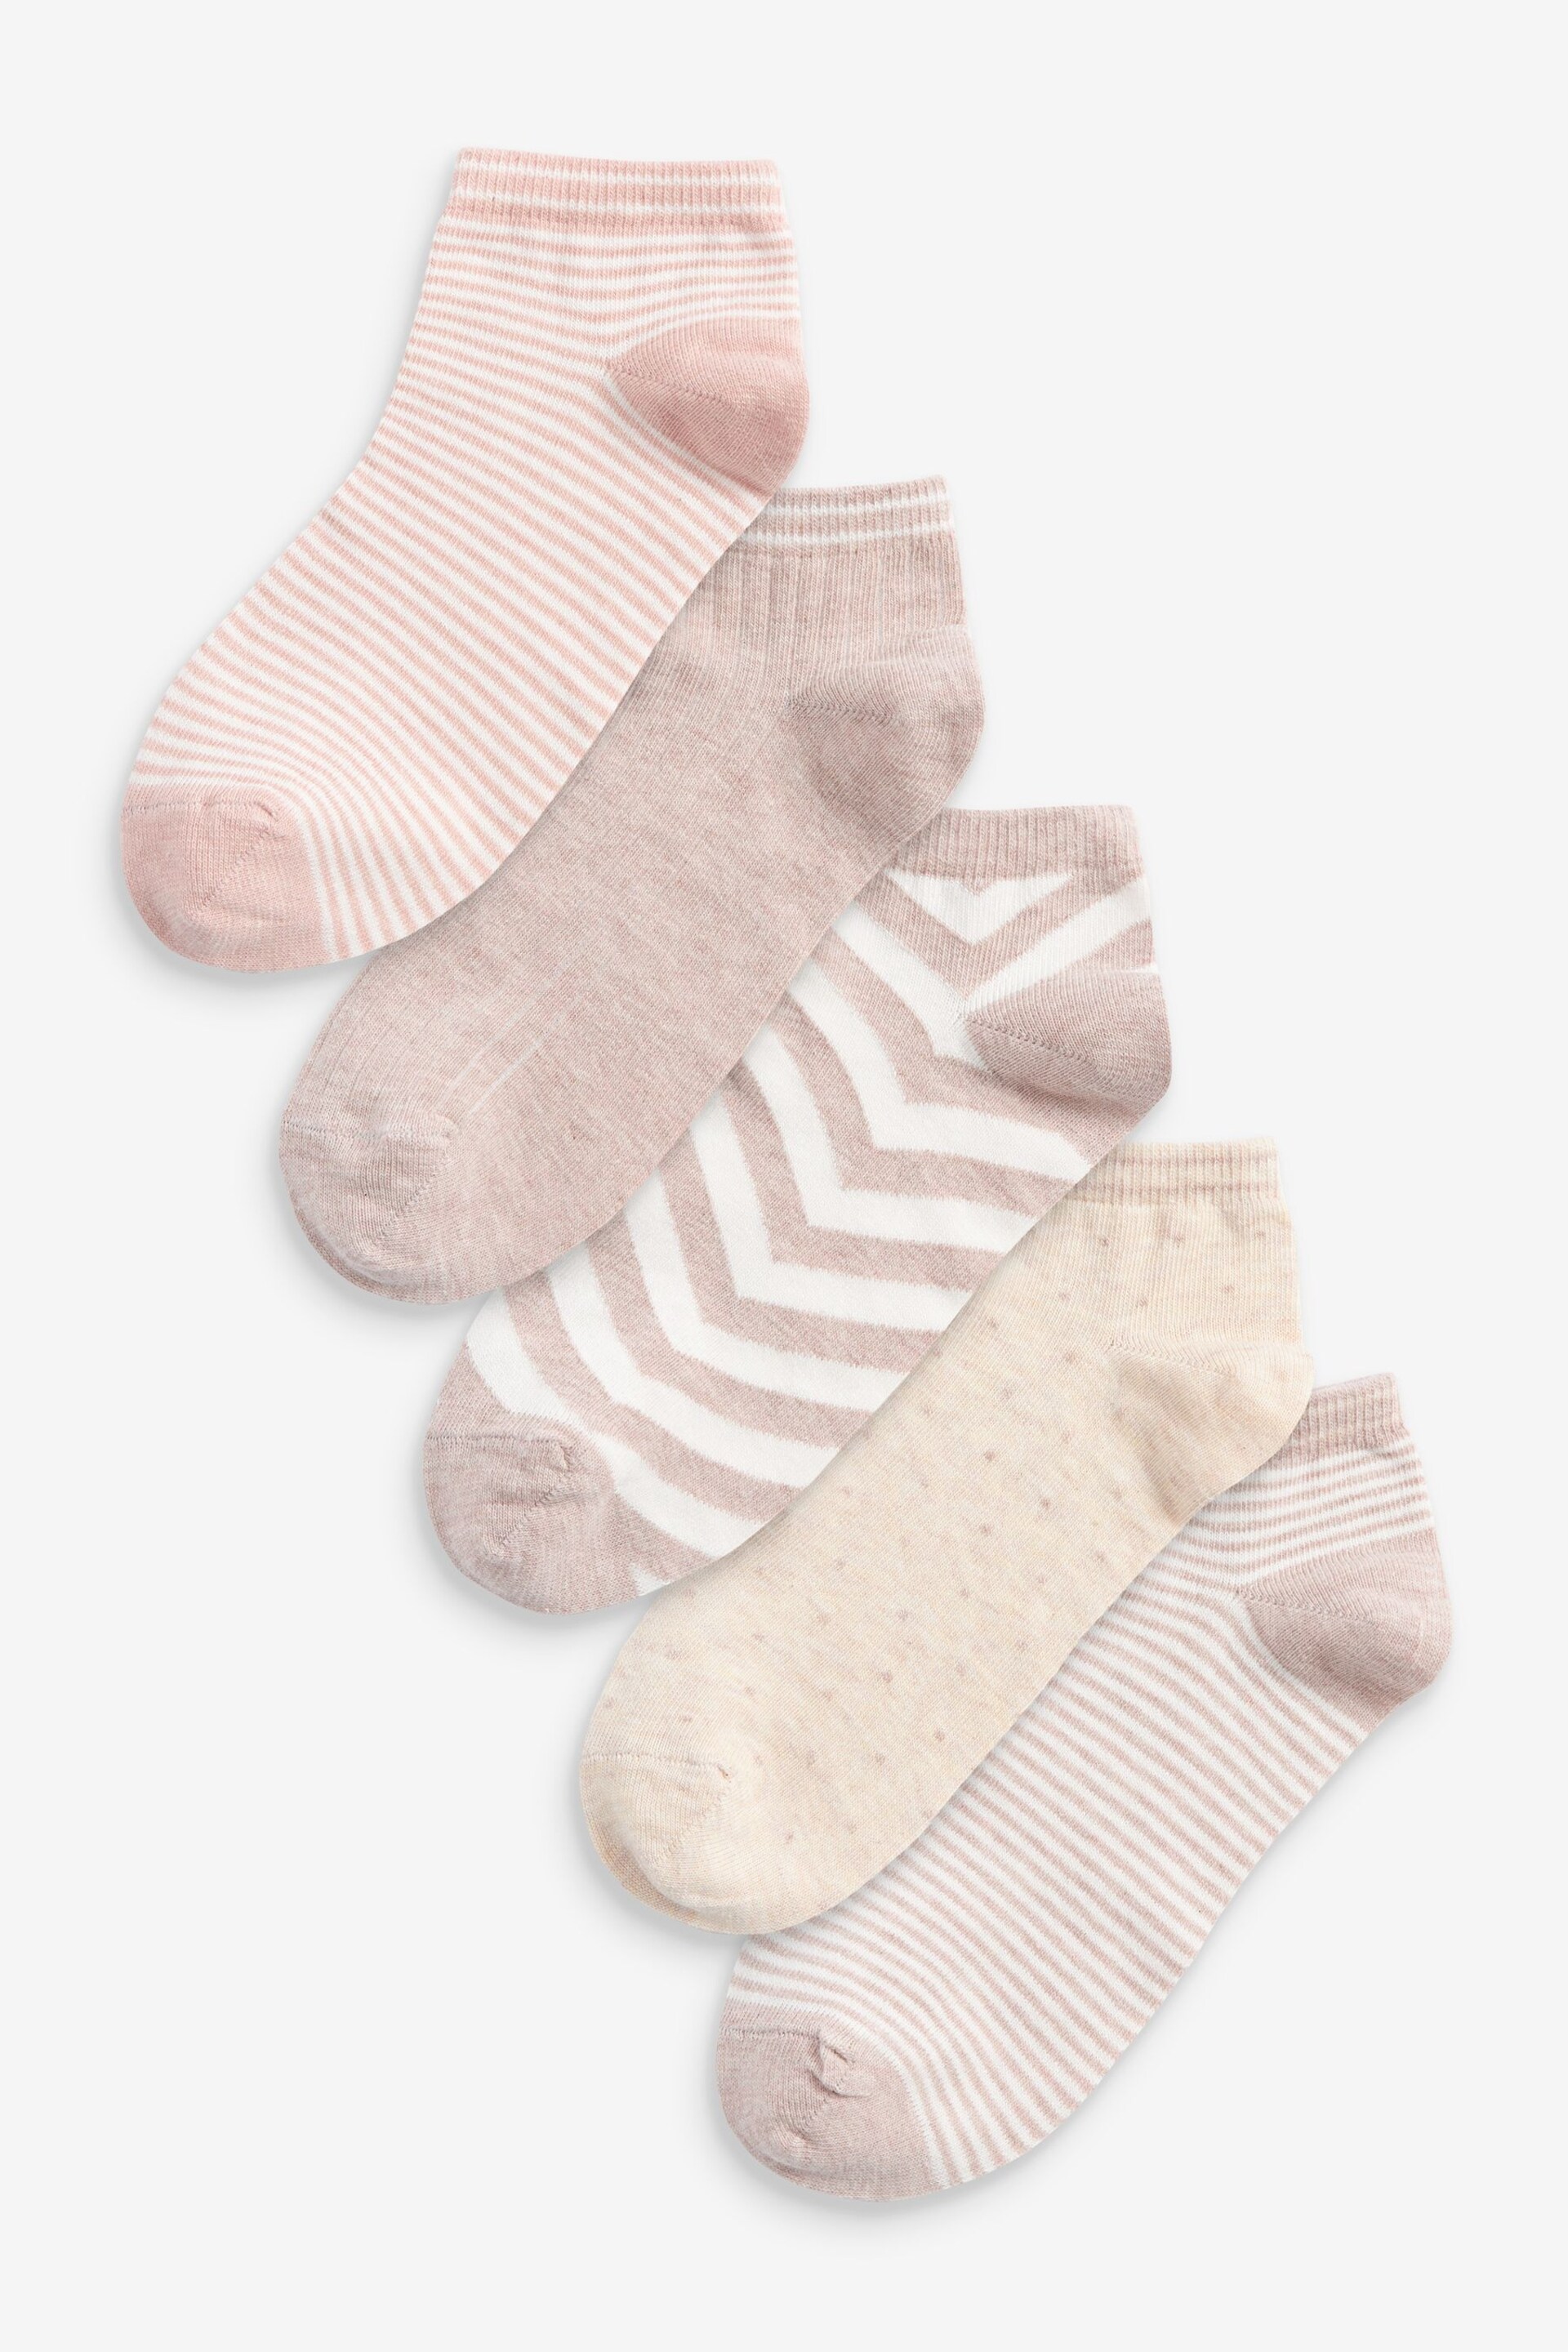 Oatmeal Cream/White Stripe Trainer Socks 5 Pack - Image 1 of 1